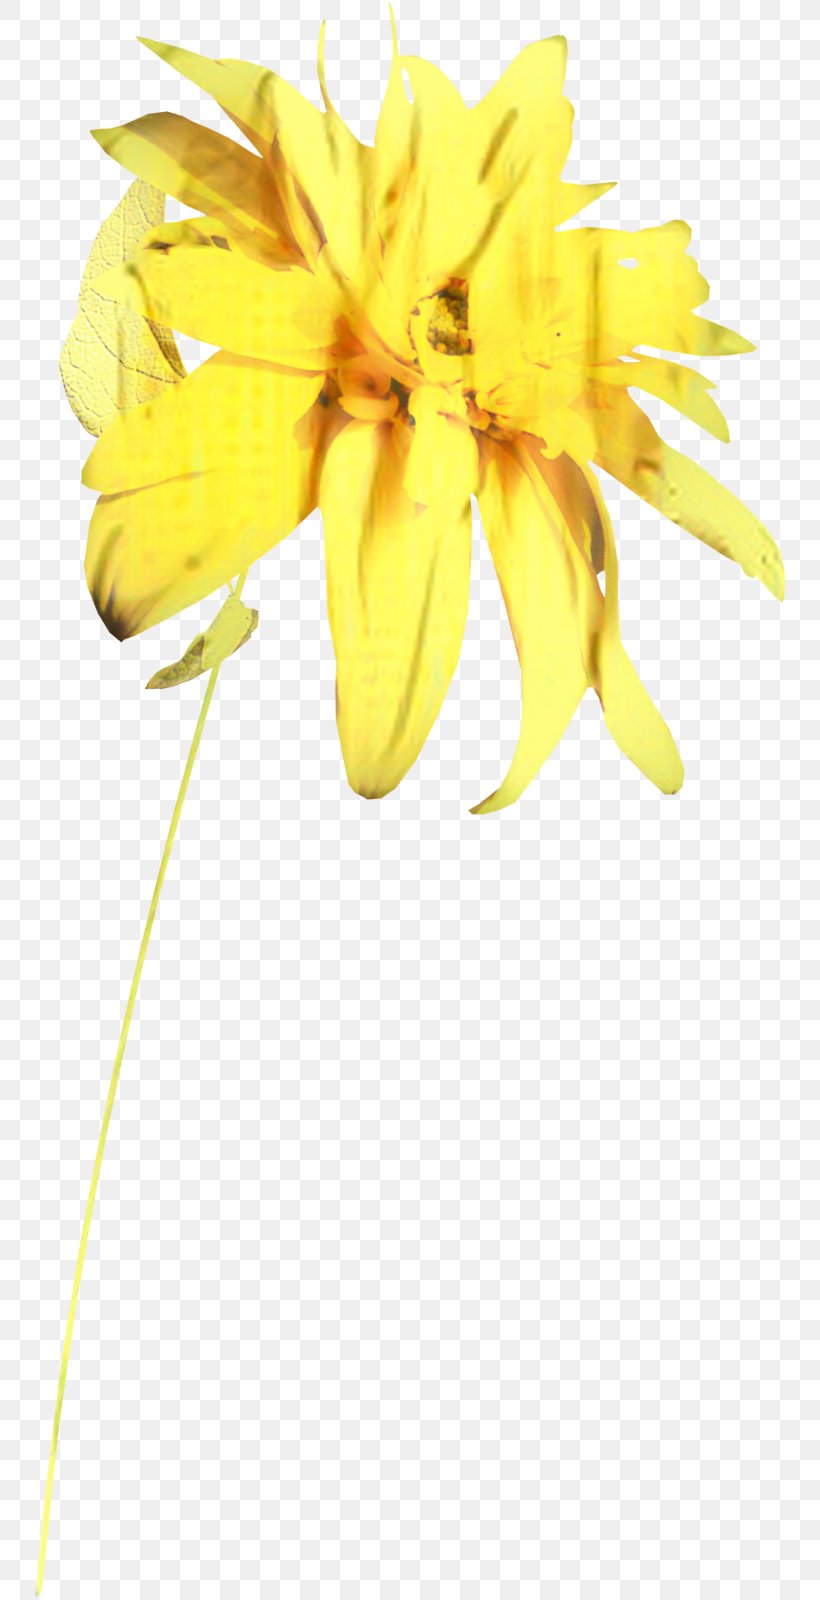 Floristry Cut Flowers Petal Plant Stem Sunflower, PNG, 752x1600px, Floristry, Cut Flowers, Flower, Flowering Plant, Pedicel Download Free